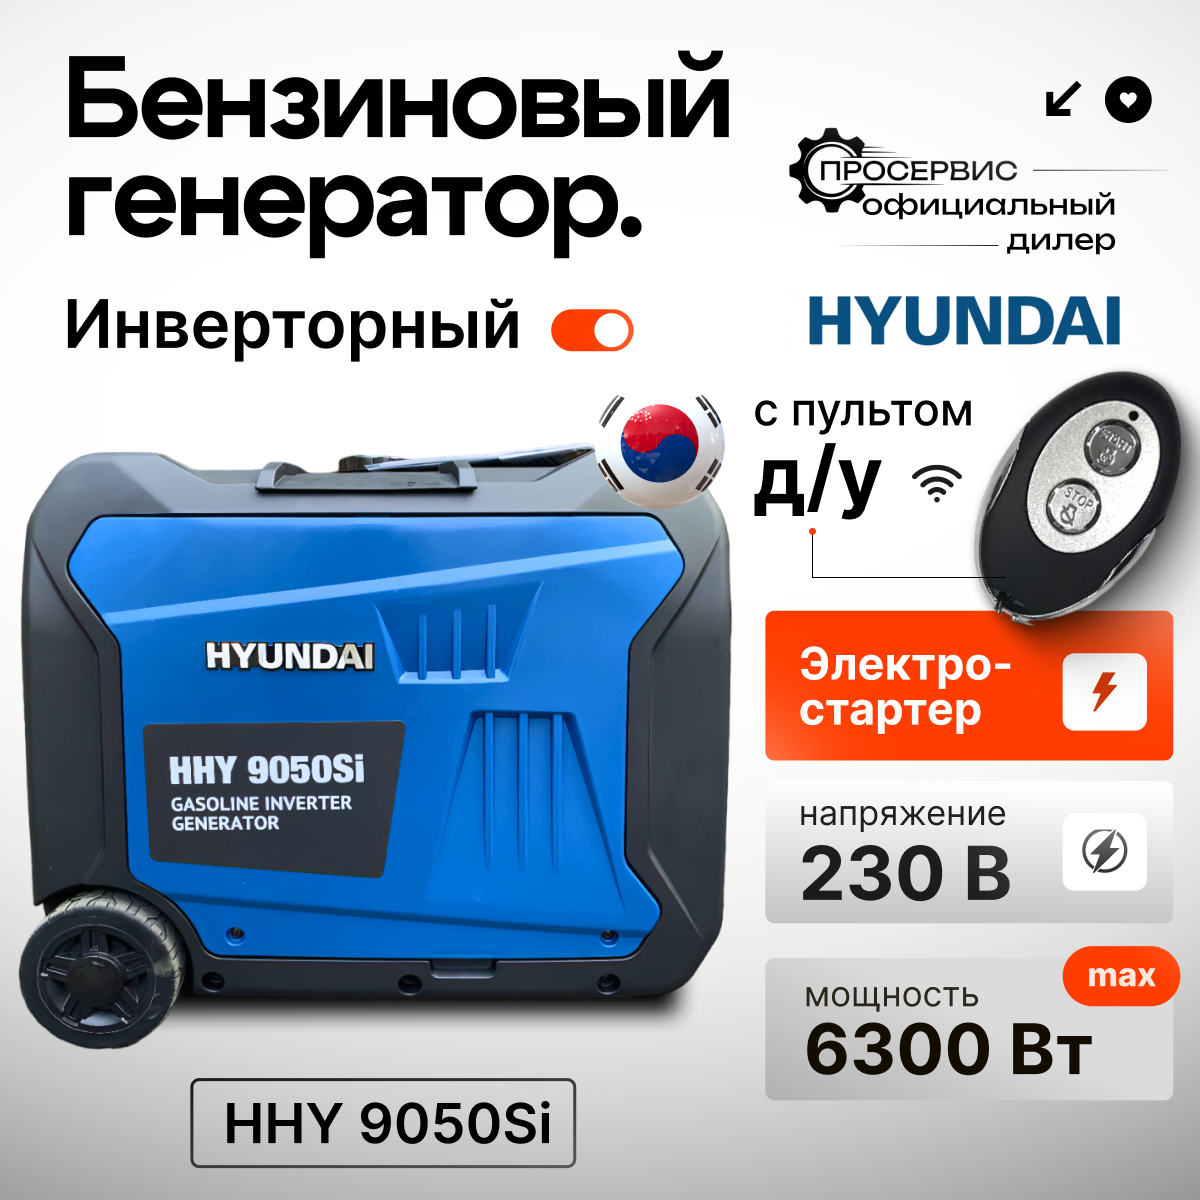 Инверторный генератор Hyundai HHY 9050Si, портативный бензогенератор 6,3 кВт с дистанционным запуском , электростанция 53кг